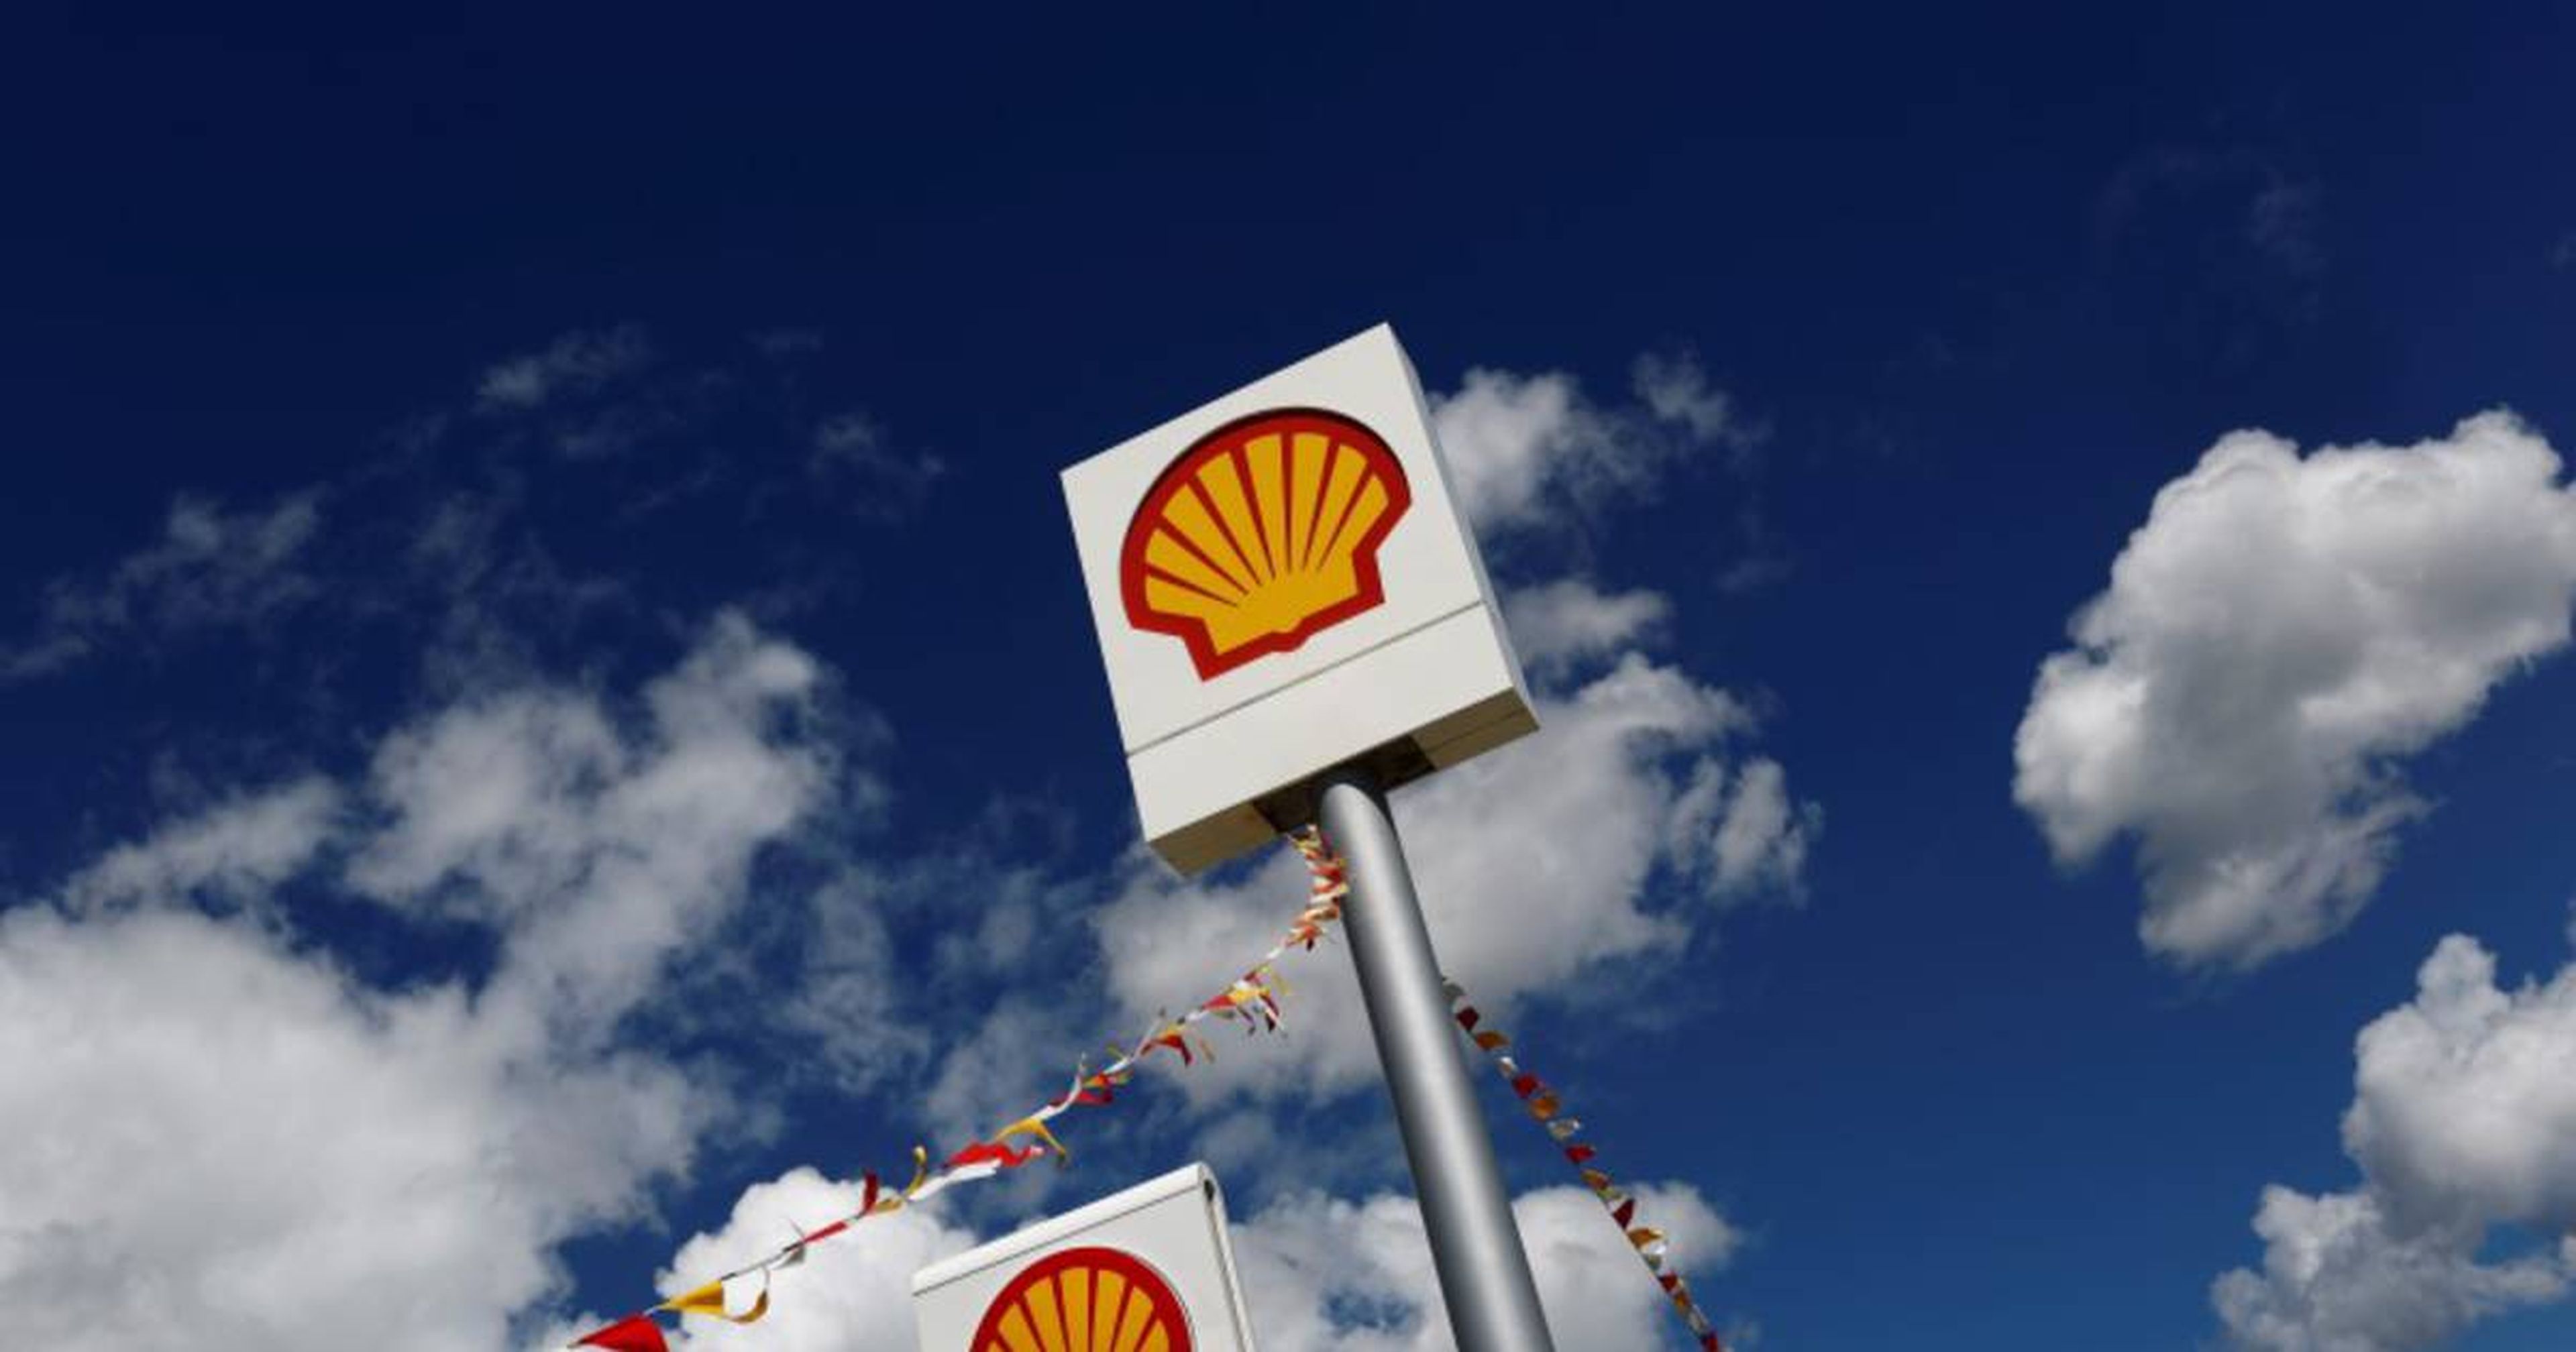 Logo de la compañía petrolera Shell en una gasolinera